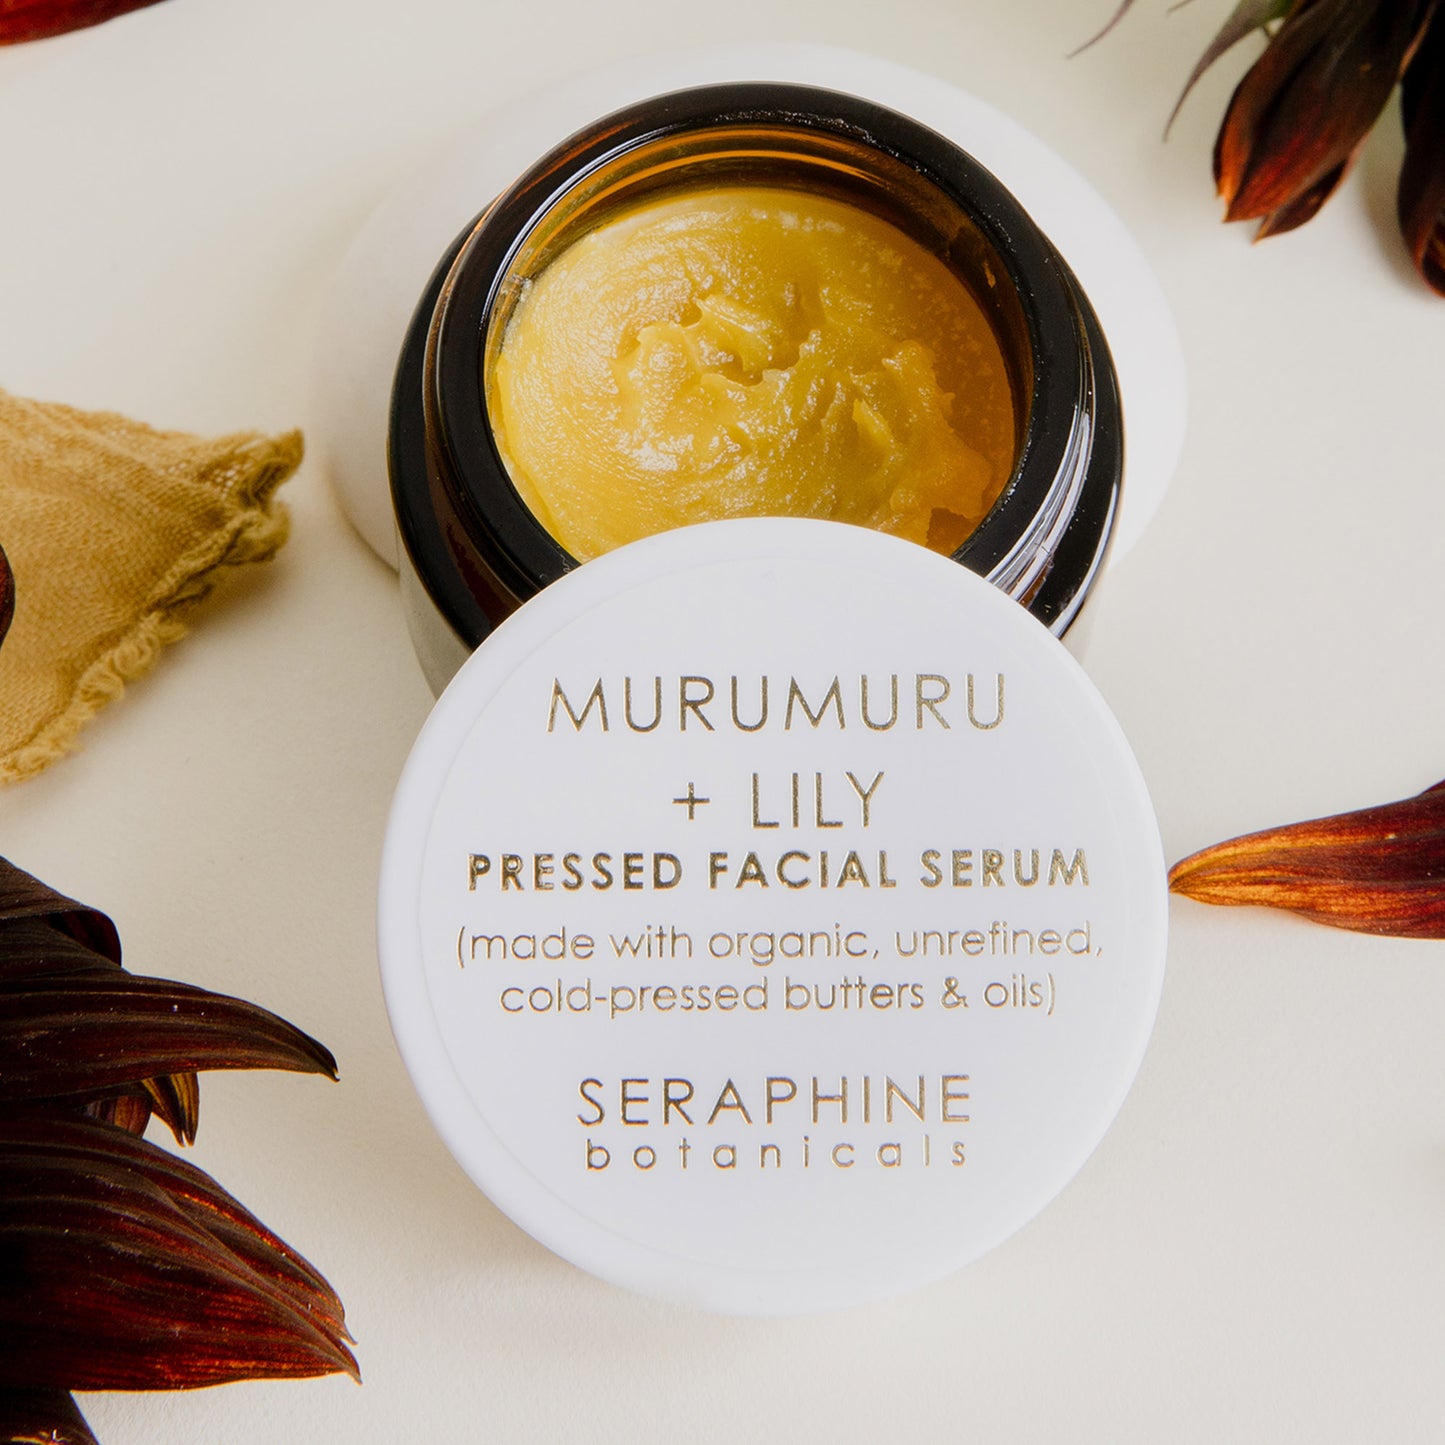 Murumuru + Lily - Pressed Facial Serum